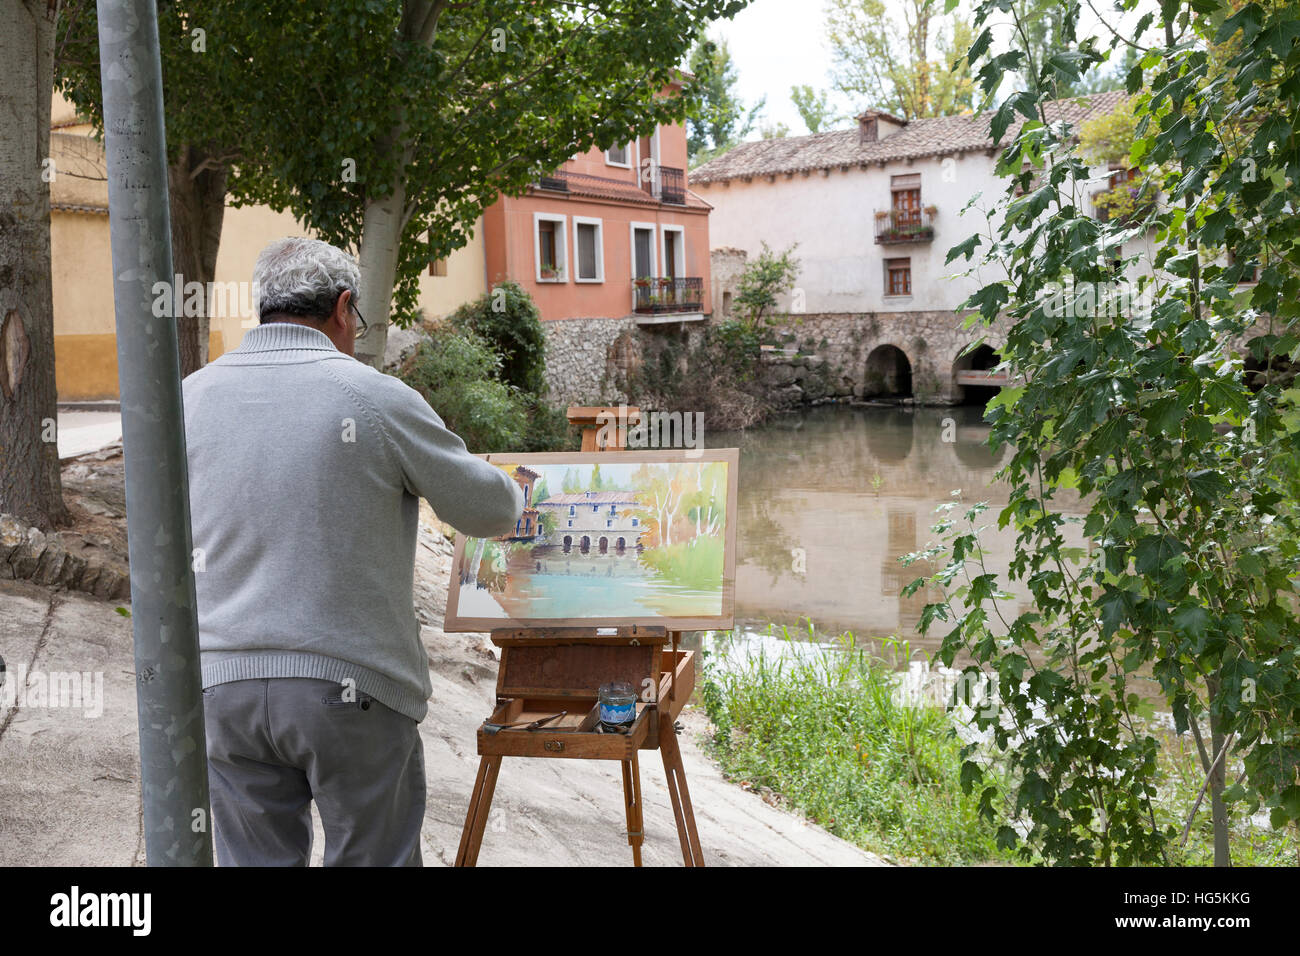 Peñafiel, Spagna: acquarello dipinto artista del vecchio mulino en plein air lungo il fiume Duratón in la Juderia Park. Foto Stock